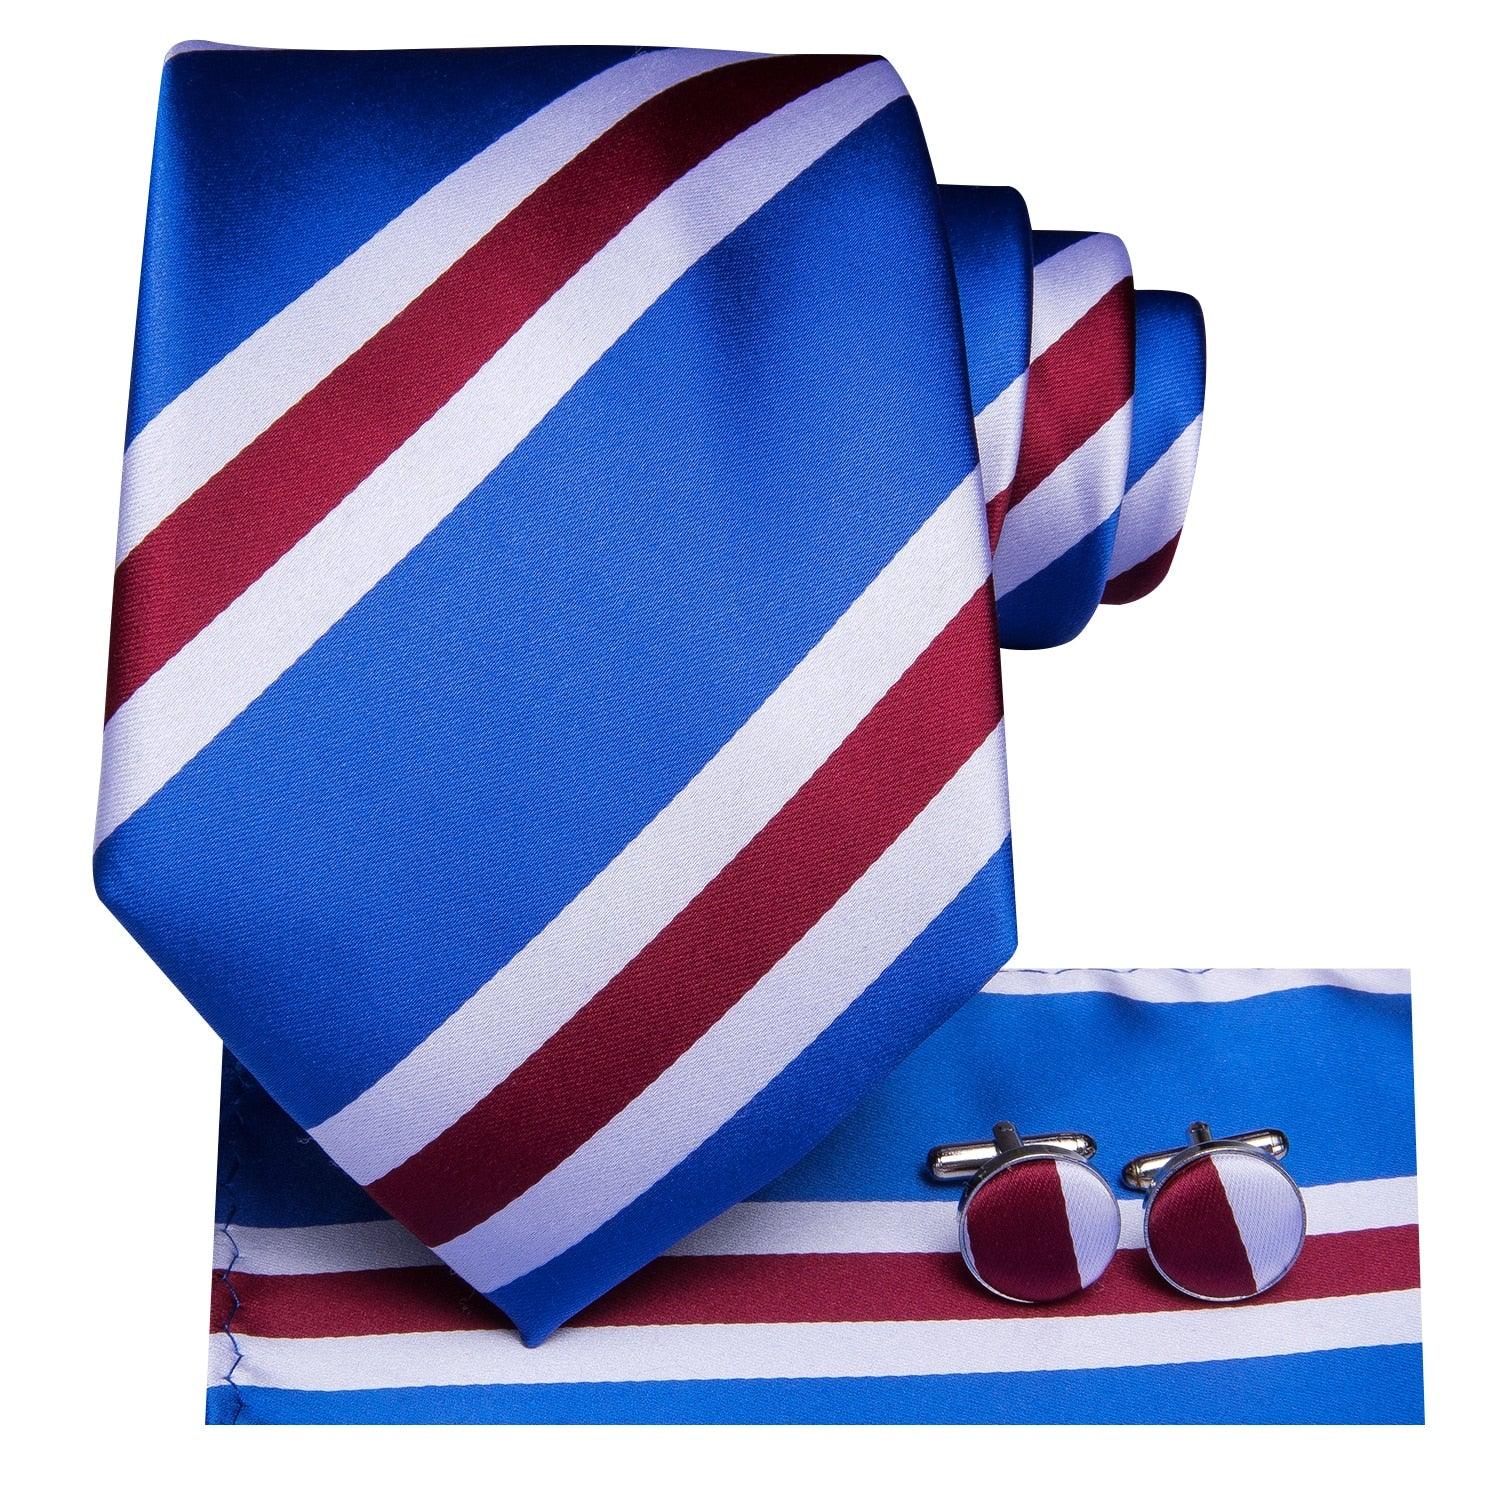 Luxury Men's Tie Blue Striped Business Silk Set Gift - Men Fashion Hanky Cufflinks Set (MA2)(F17)